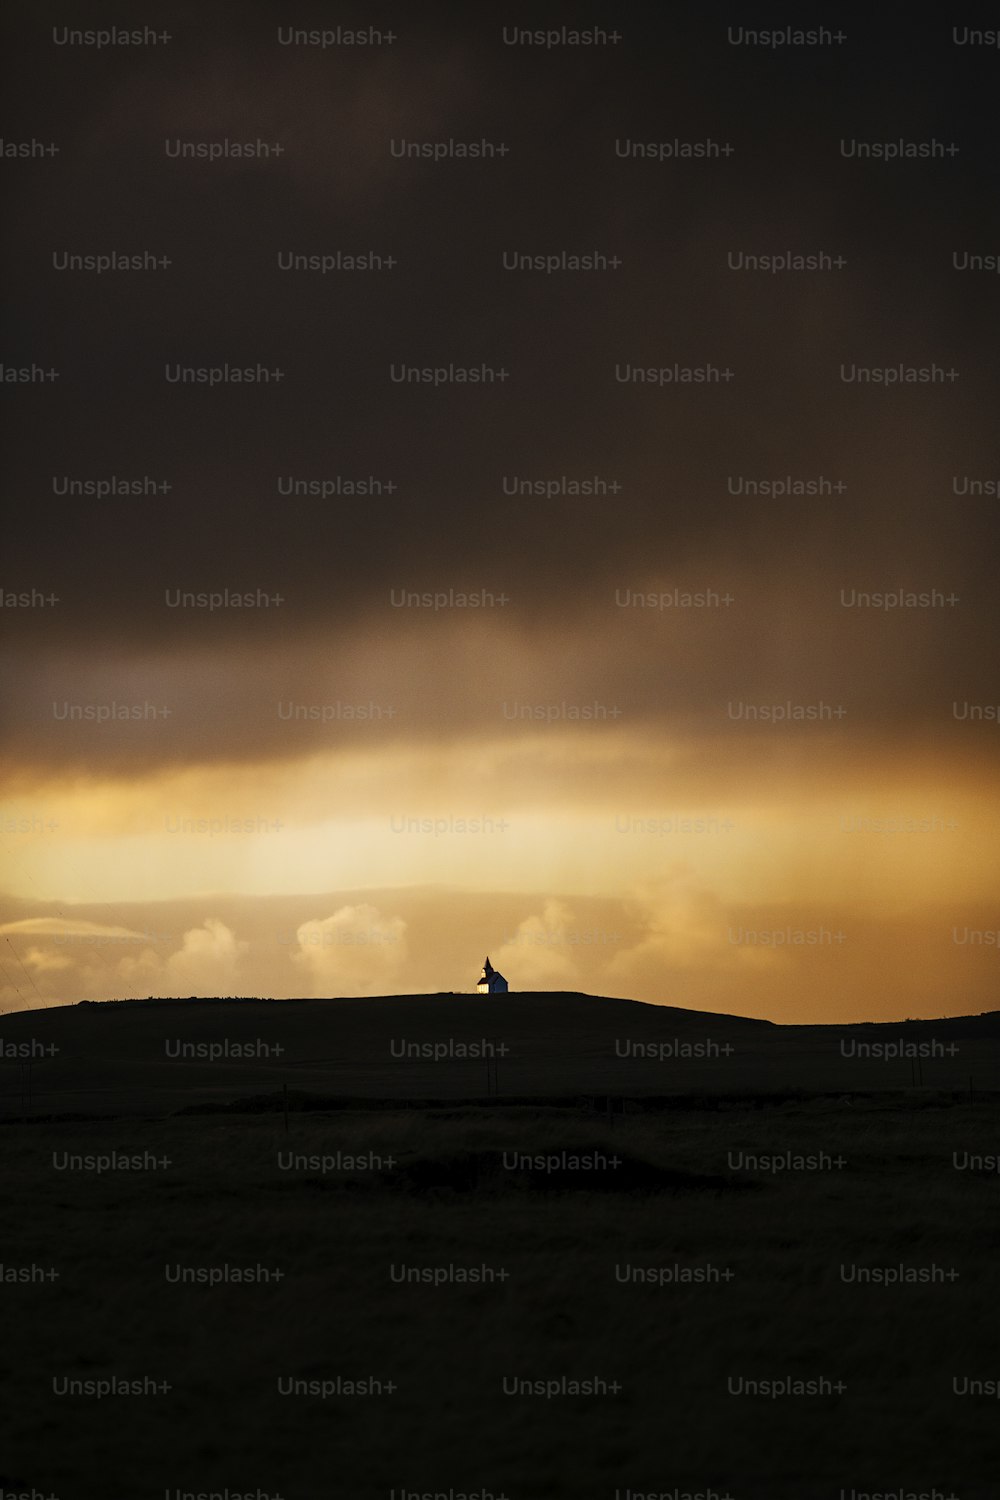 Ein einsames Pferd, das auf einem Hügel unter einem bewölkten Himmel steht